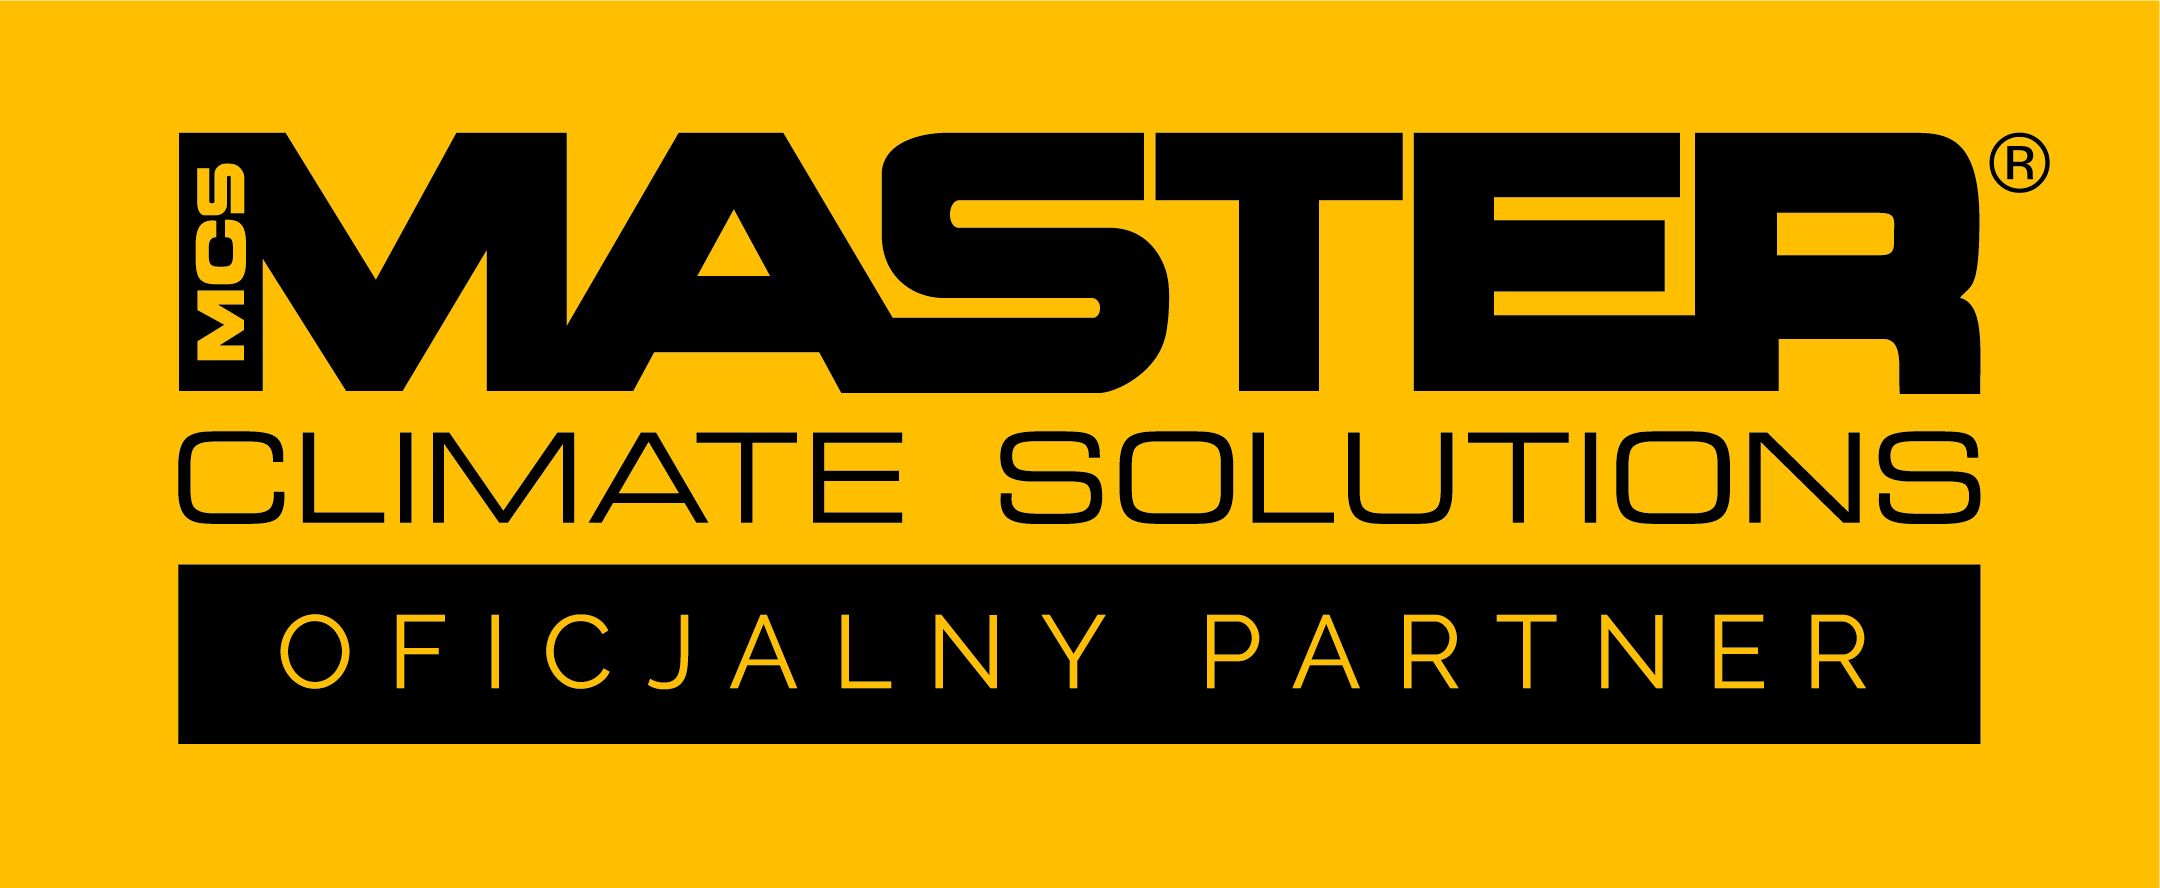 Master Reseller Logo_PL.jpg